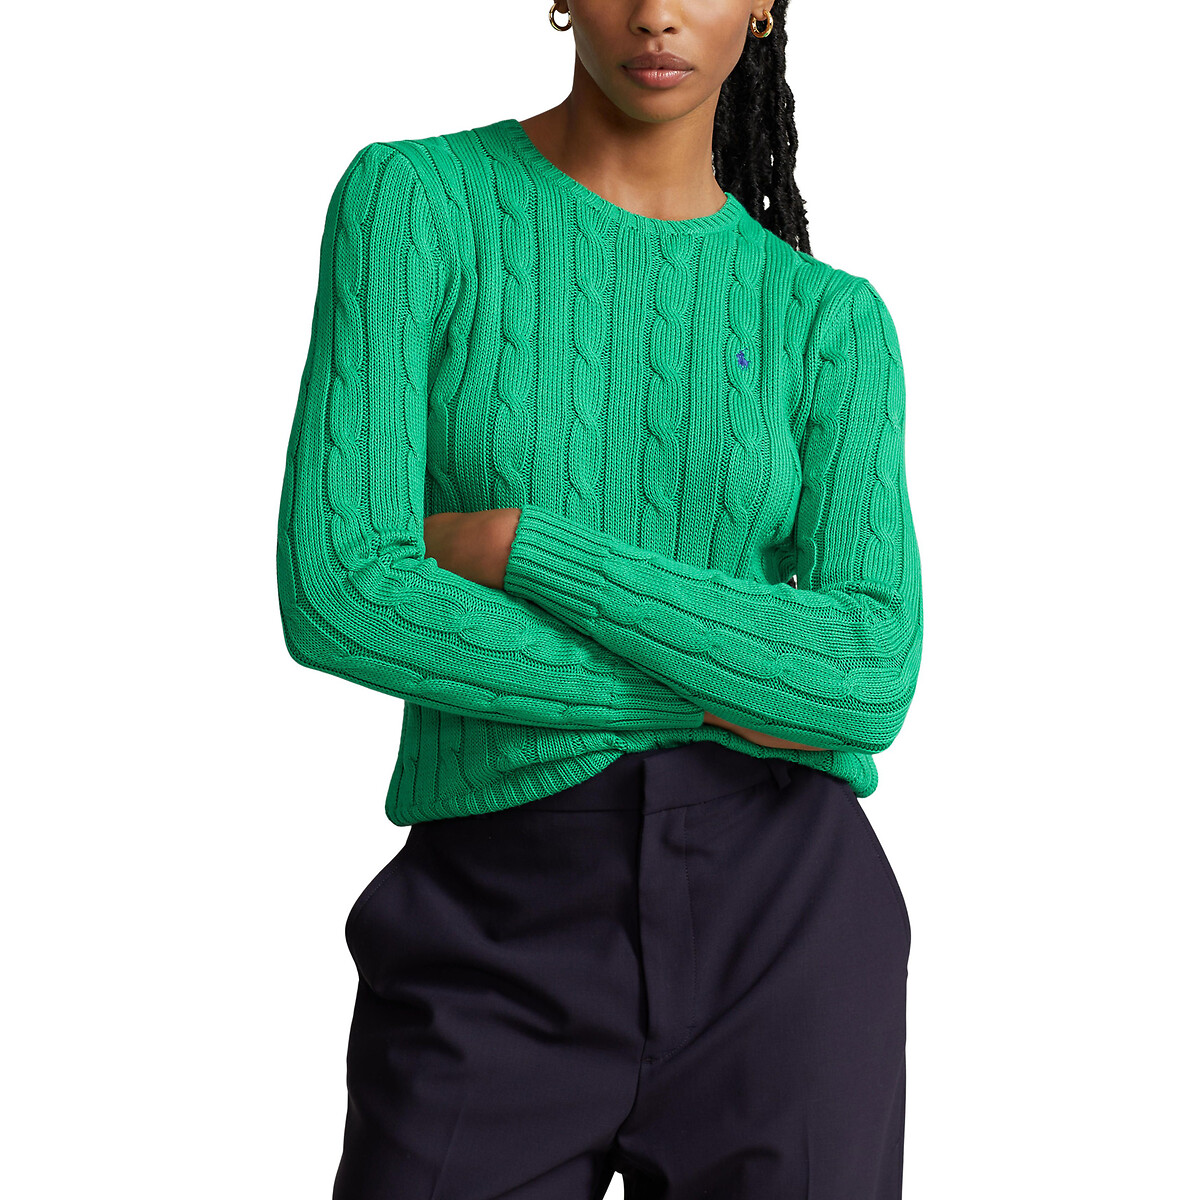 Пуловер Julianna из витого трикотажа с круглым вырезом M зеленый пуловер с v образным вырезом и витым узором xl синий